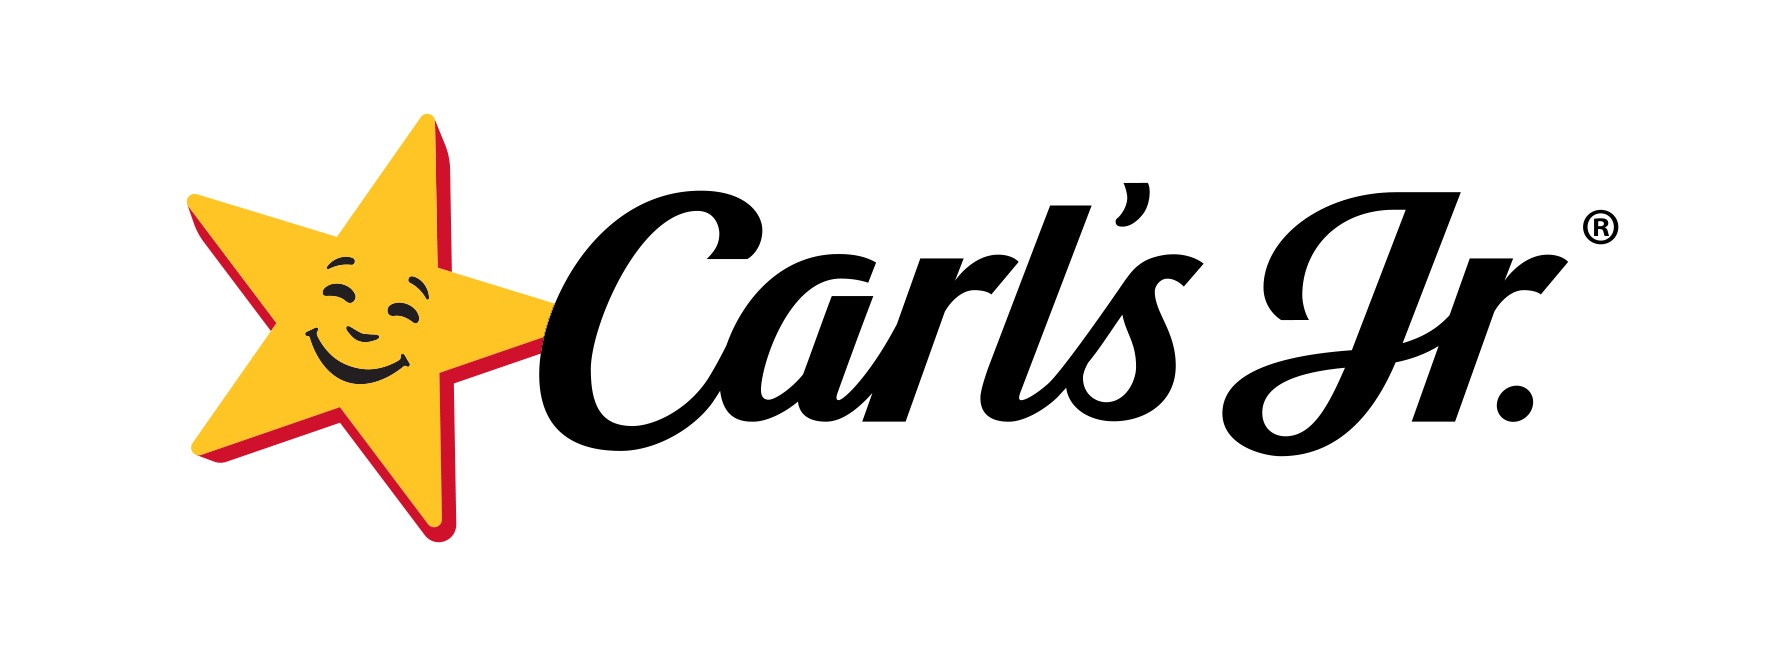 Aunque pareciera muy sencillo el logo de Carl's Jr, tiene un trasfondo relacionado con las emociones que te genera felicidad al comer una hamburguesa.